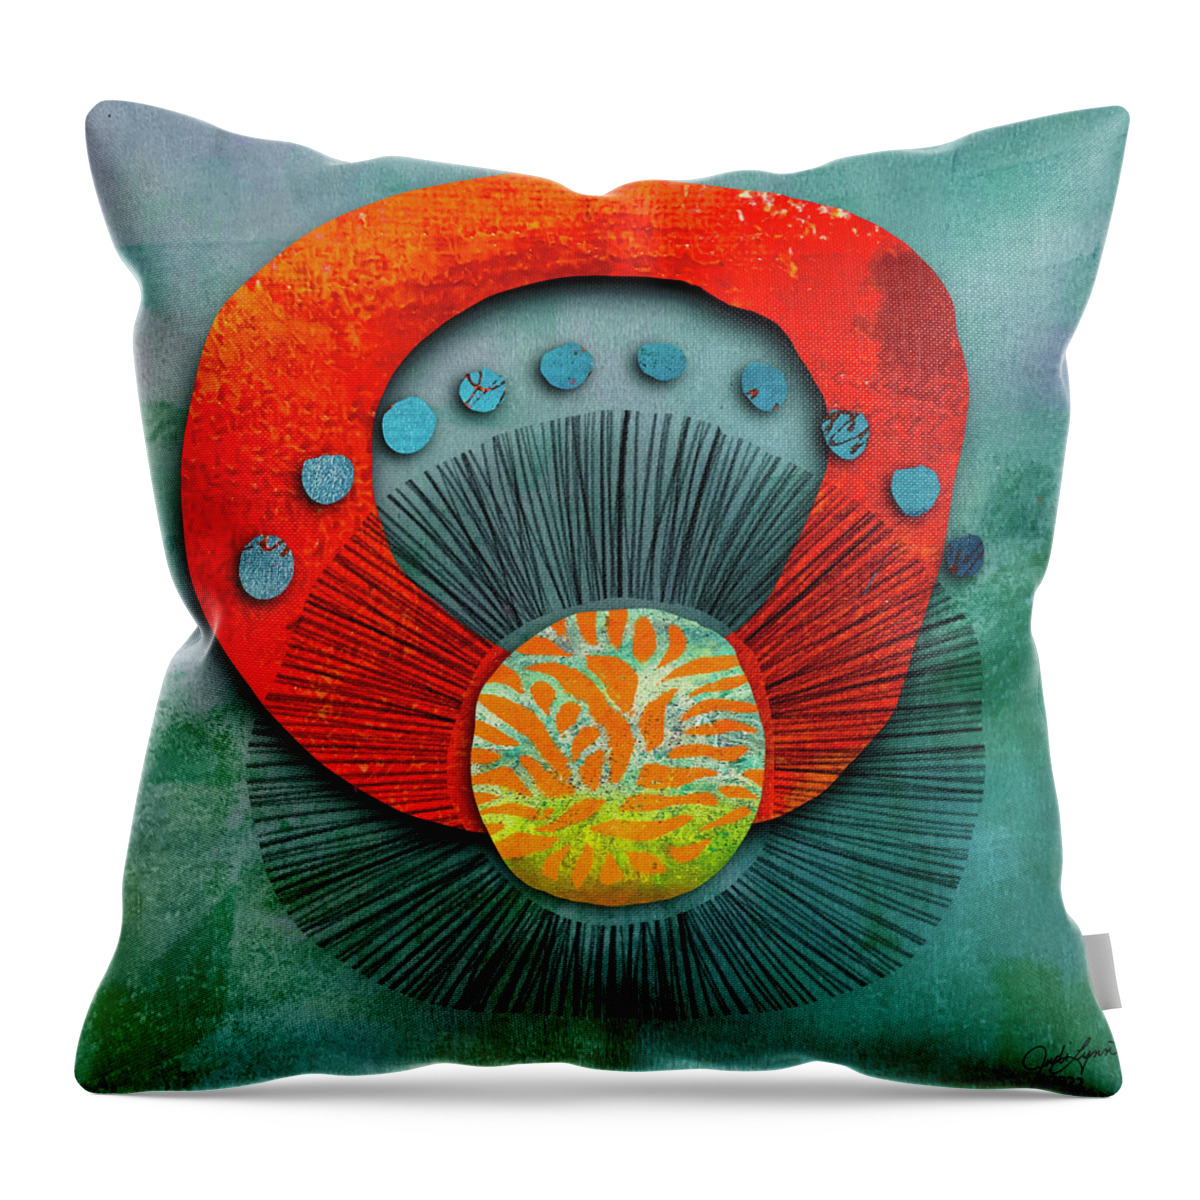 Digital Collage Throw Pillow featuring the digital art Mystical 2 by Judi Lynn